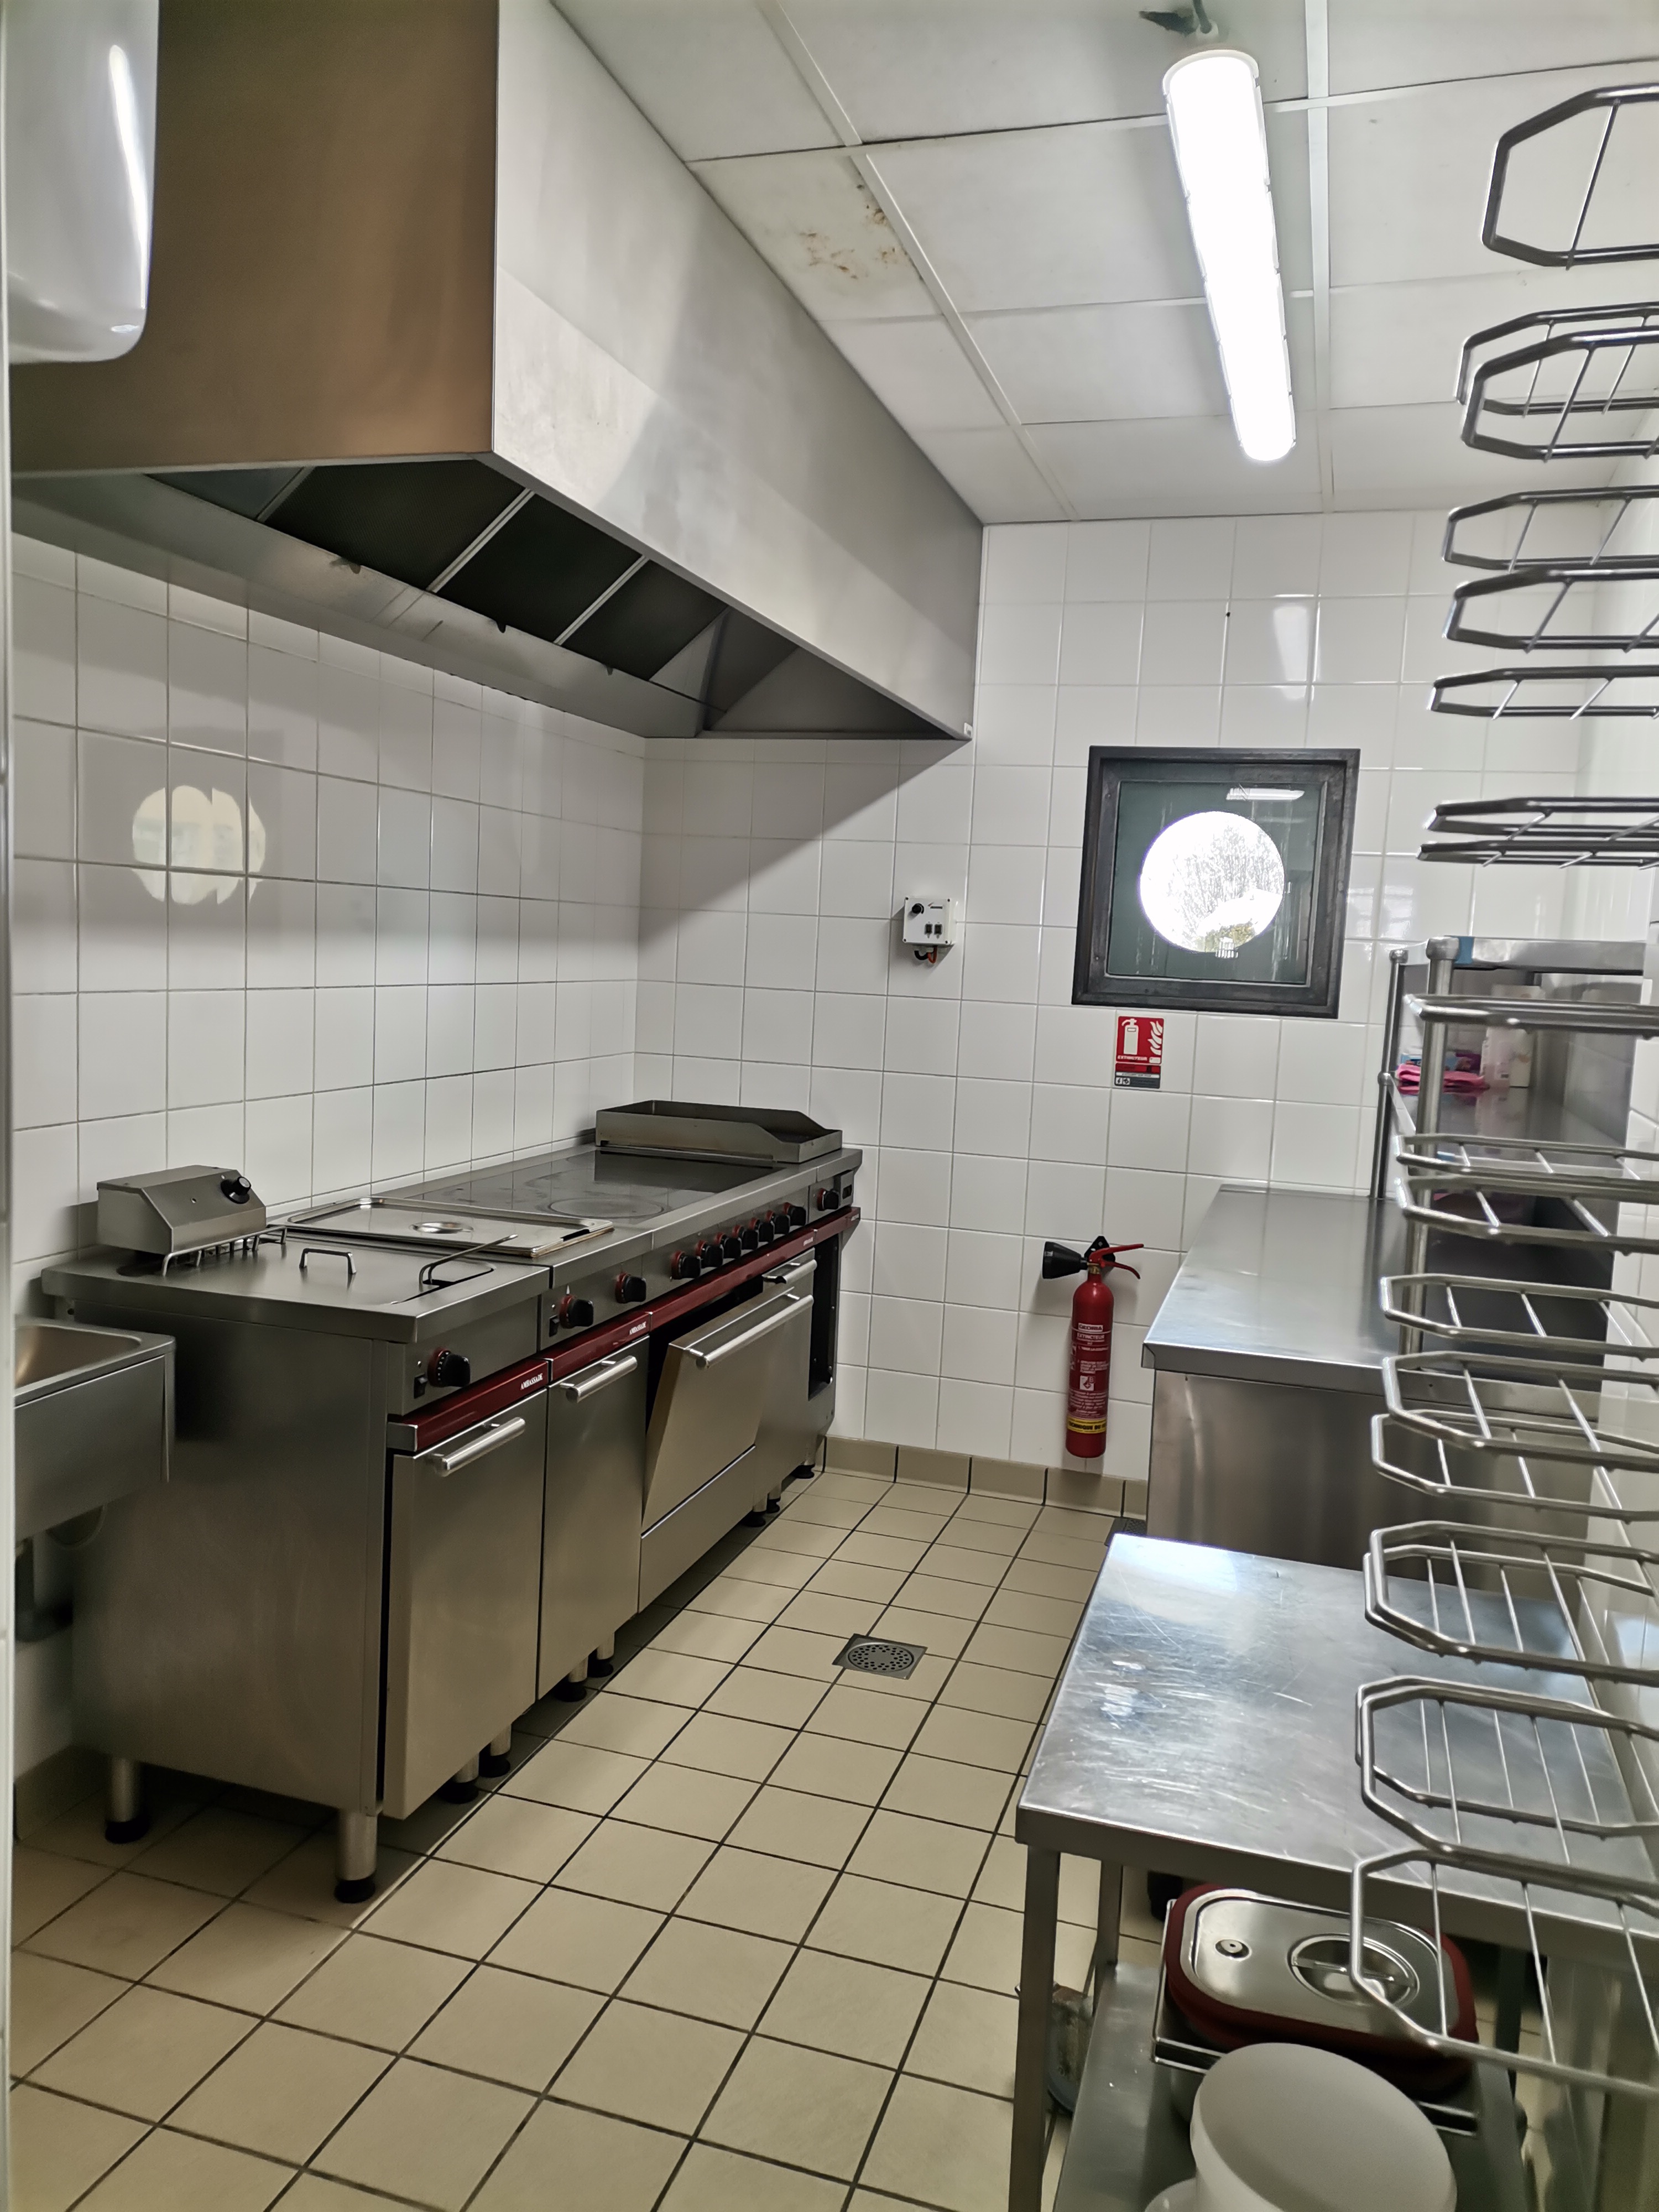 La commune de Moussages situé à proximité de Mauriac ville sous-préfecture,  au cœur du Cantal, département le moins pollué de France. 
Recherche un couple de gérants possédant de bonnes compétences en cuisine pour reprendre en location- gérance le bar - restaurant « LE MARILHOUX », bar licence IV.
L'établissement d'une superficie de 74 m2, se compose d'une salle de restaurant de 50 couverts, d'une salle de bar et de deux terrasses (capacité 40 couverts), le four à pizzas ainsi que l'ensemble du matériel en très bon état sera à disposition de l'exploitant. 
Parking client à proximité de l'établissement. Ce bâtiment à fort potentiel pourrait accueillir dans l'avenir une dizaine de chambres d'hôtel. A proximité de ce bâtiment la commune est en mesure de proposer un logement pour le gérant.
Le Marilhoux est un bar restaurant implanté dans le bourg de Moussages dans le Cantal, il est niché à 850 m d’altitude dans un site exceptionnel au cœur du Parc Régional des Volcans d’Auvergne,  
Le Marilhoux est situé à un carrefour touristique, proche des stations de sports d'hiver (Le Lioran, Prat de Bouc, Super Besse, le Mont Dore) entre Mauriac, Salers classé plus beau village de France, Auzers et son château,  les sites touristiques du département de la Corrèze.
Tout ceci dans un cadre exceptionnel entouré des montagnes alentours qui vous ouvrent une vue directe sur le Puy Violent , Puy Mary et les Monts du Sancy. Une multitude de sites alentours vous invitent aux loisirs de pleins air, de découverte nature et de visites de lieux historiques. 
Village dynamique au travers de ses associations.
Les critères de sélection se feront autour des compétences et de l'ancienneté dans le métier.
Dossier à présenter auprès de la mairie de moussages, documents à joindre au dossier
- Un descriptif détaillé du projet
-Un justificatif des apports financiers 
-Un curriculum vitae des deux personnes (si candidature couple)
-Une lettre de motivation
Renseignements
Mail : mairie-moussages@wanadoo.fr
Téléphone : 04 71 40 07 68